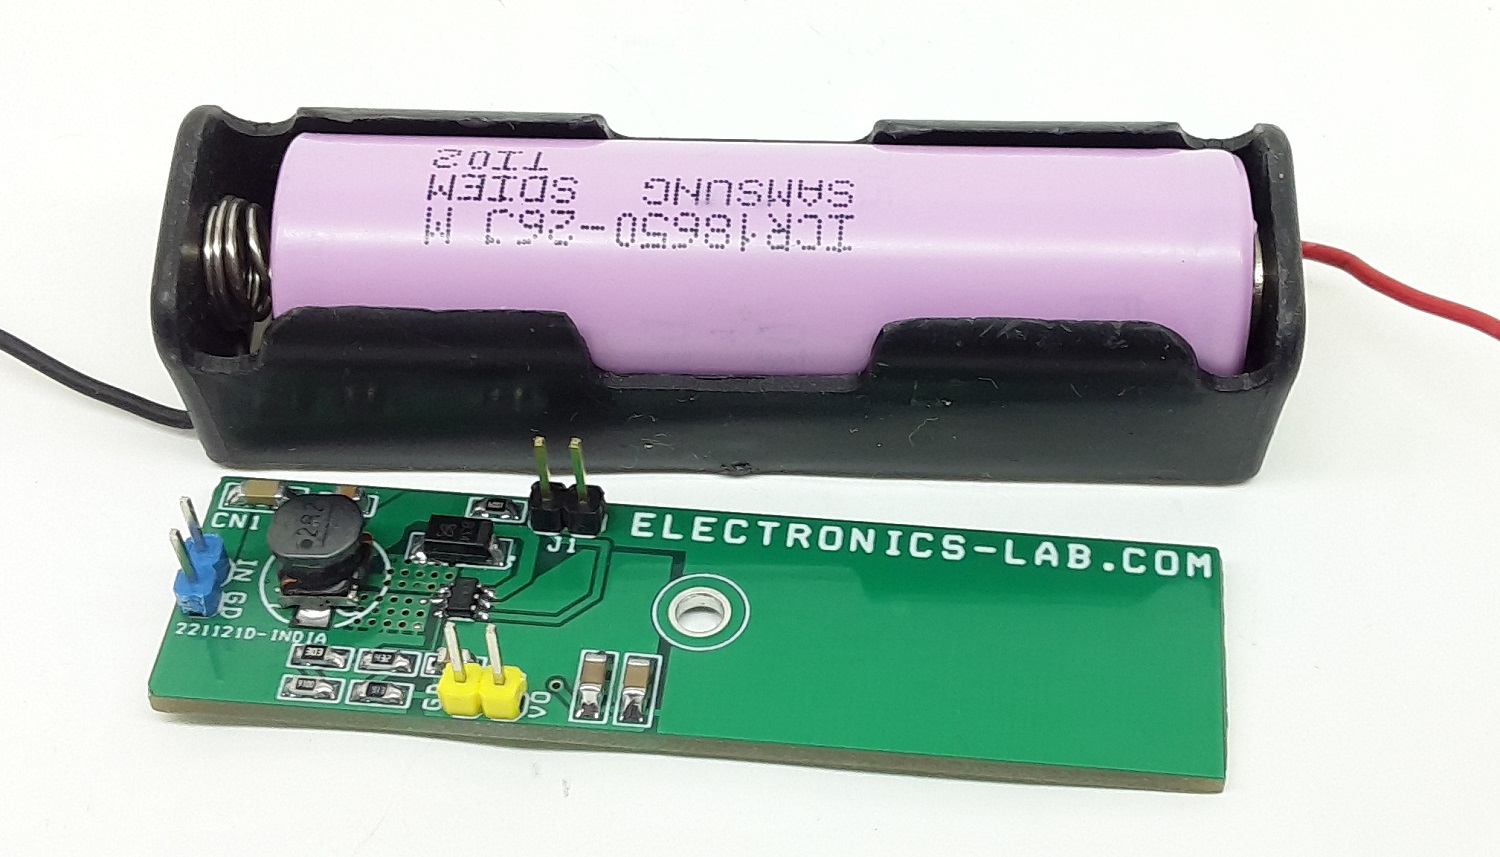 navigatie bedenken Stevig Li-Ion/Li-Po 18650 Battery to 5V Boost Converter - Electronics-Lab.com